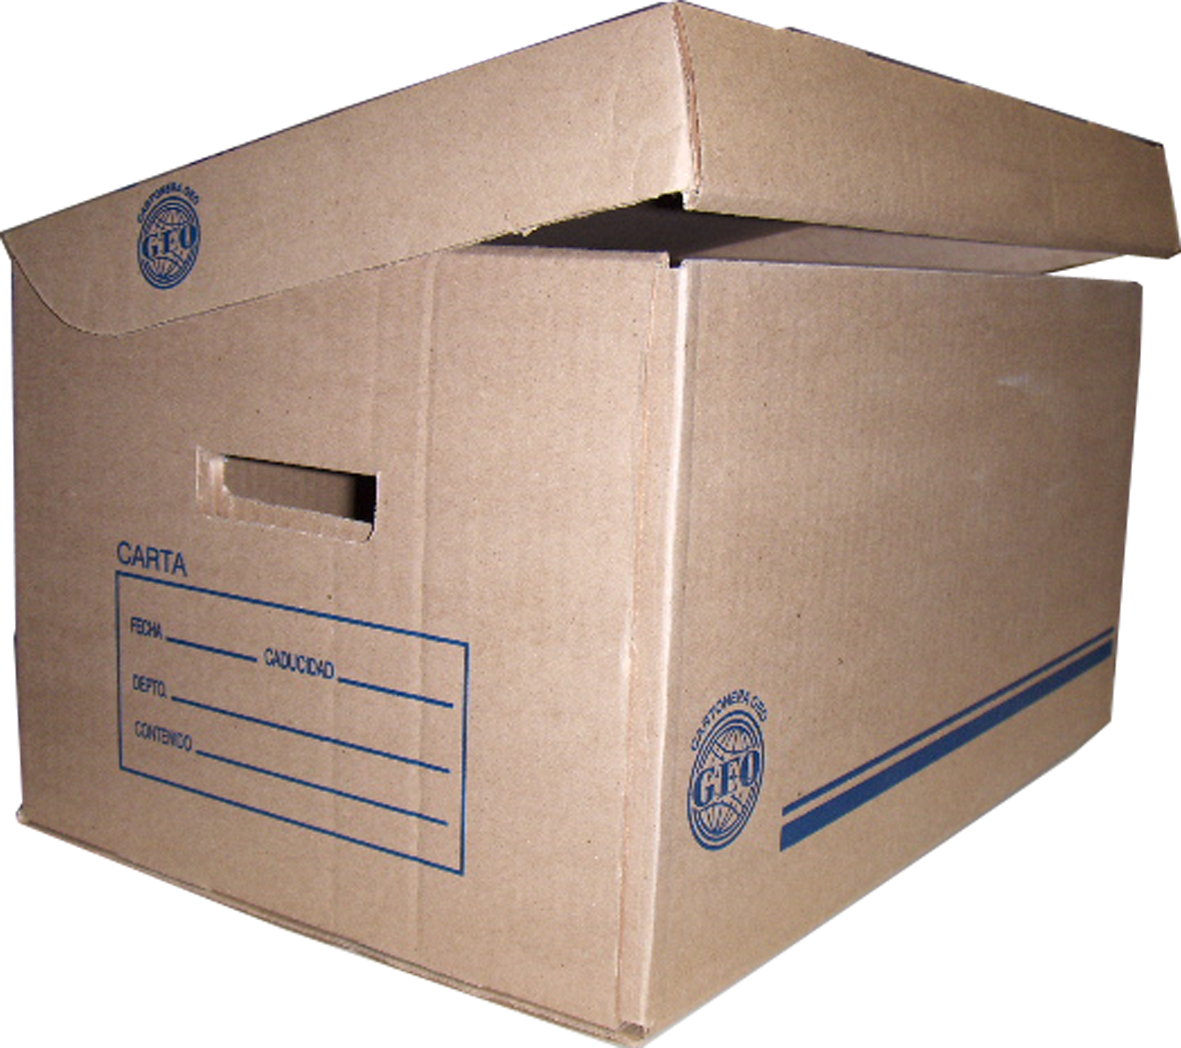 Caja de archivo GEO kraft para registrad Medida: 50 x 35 x 29 cm, cartón corrugado sencillo kraft, corte sobre suaje, 95% reciclado, calibre de 3 mm, resistencia de 11 kg/cm, flauta tipo "C".                                                                                                          or oficio                                - GEO